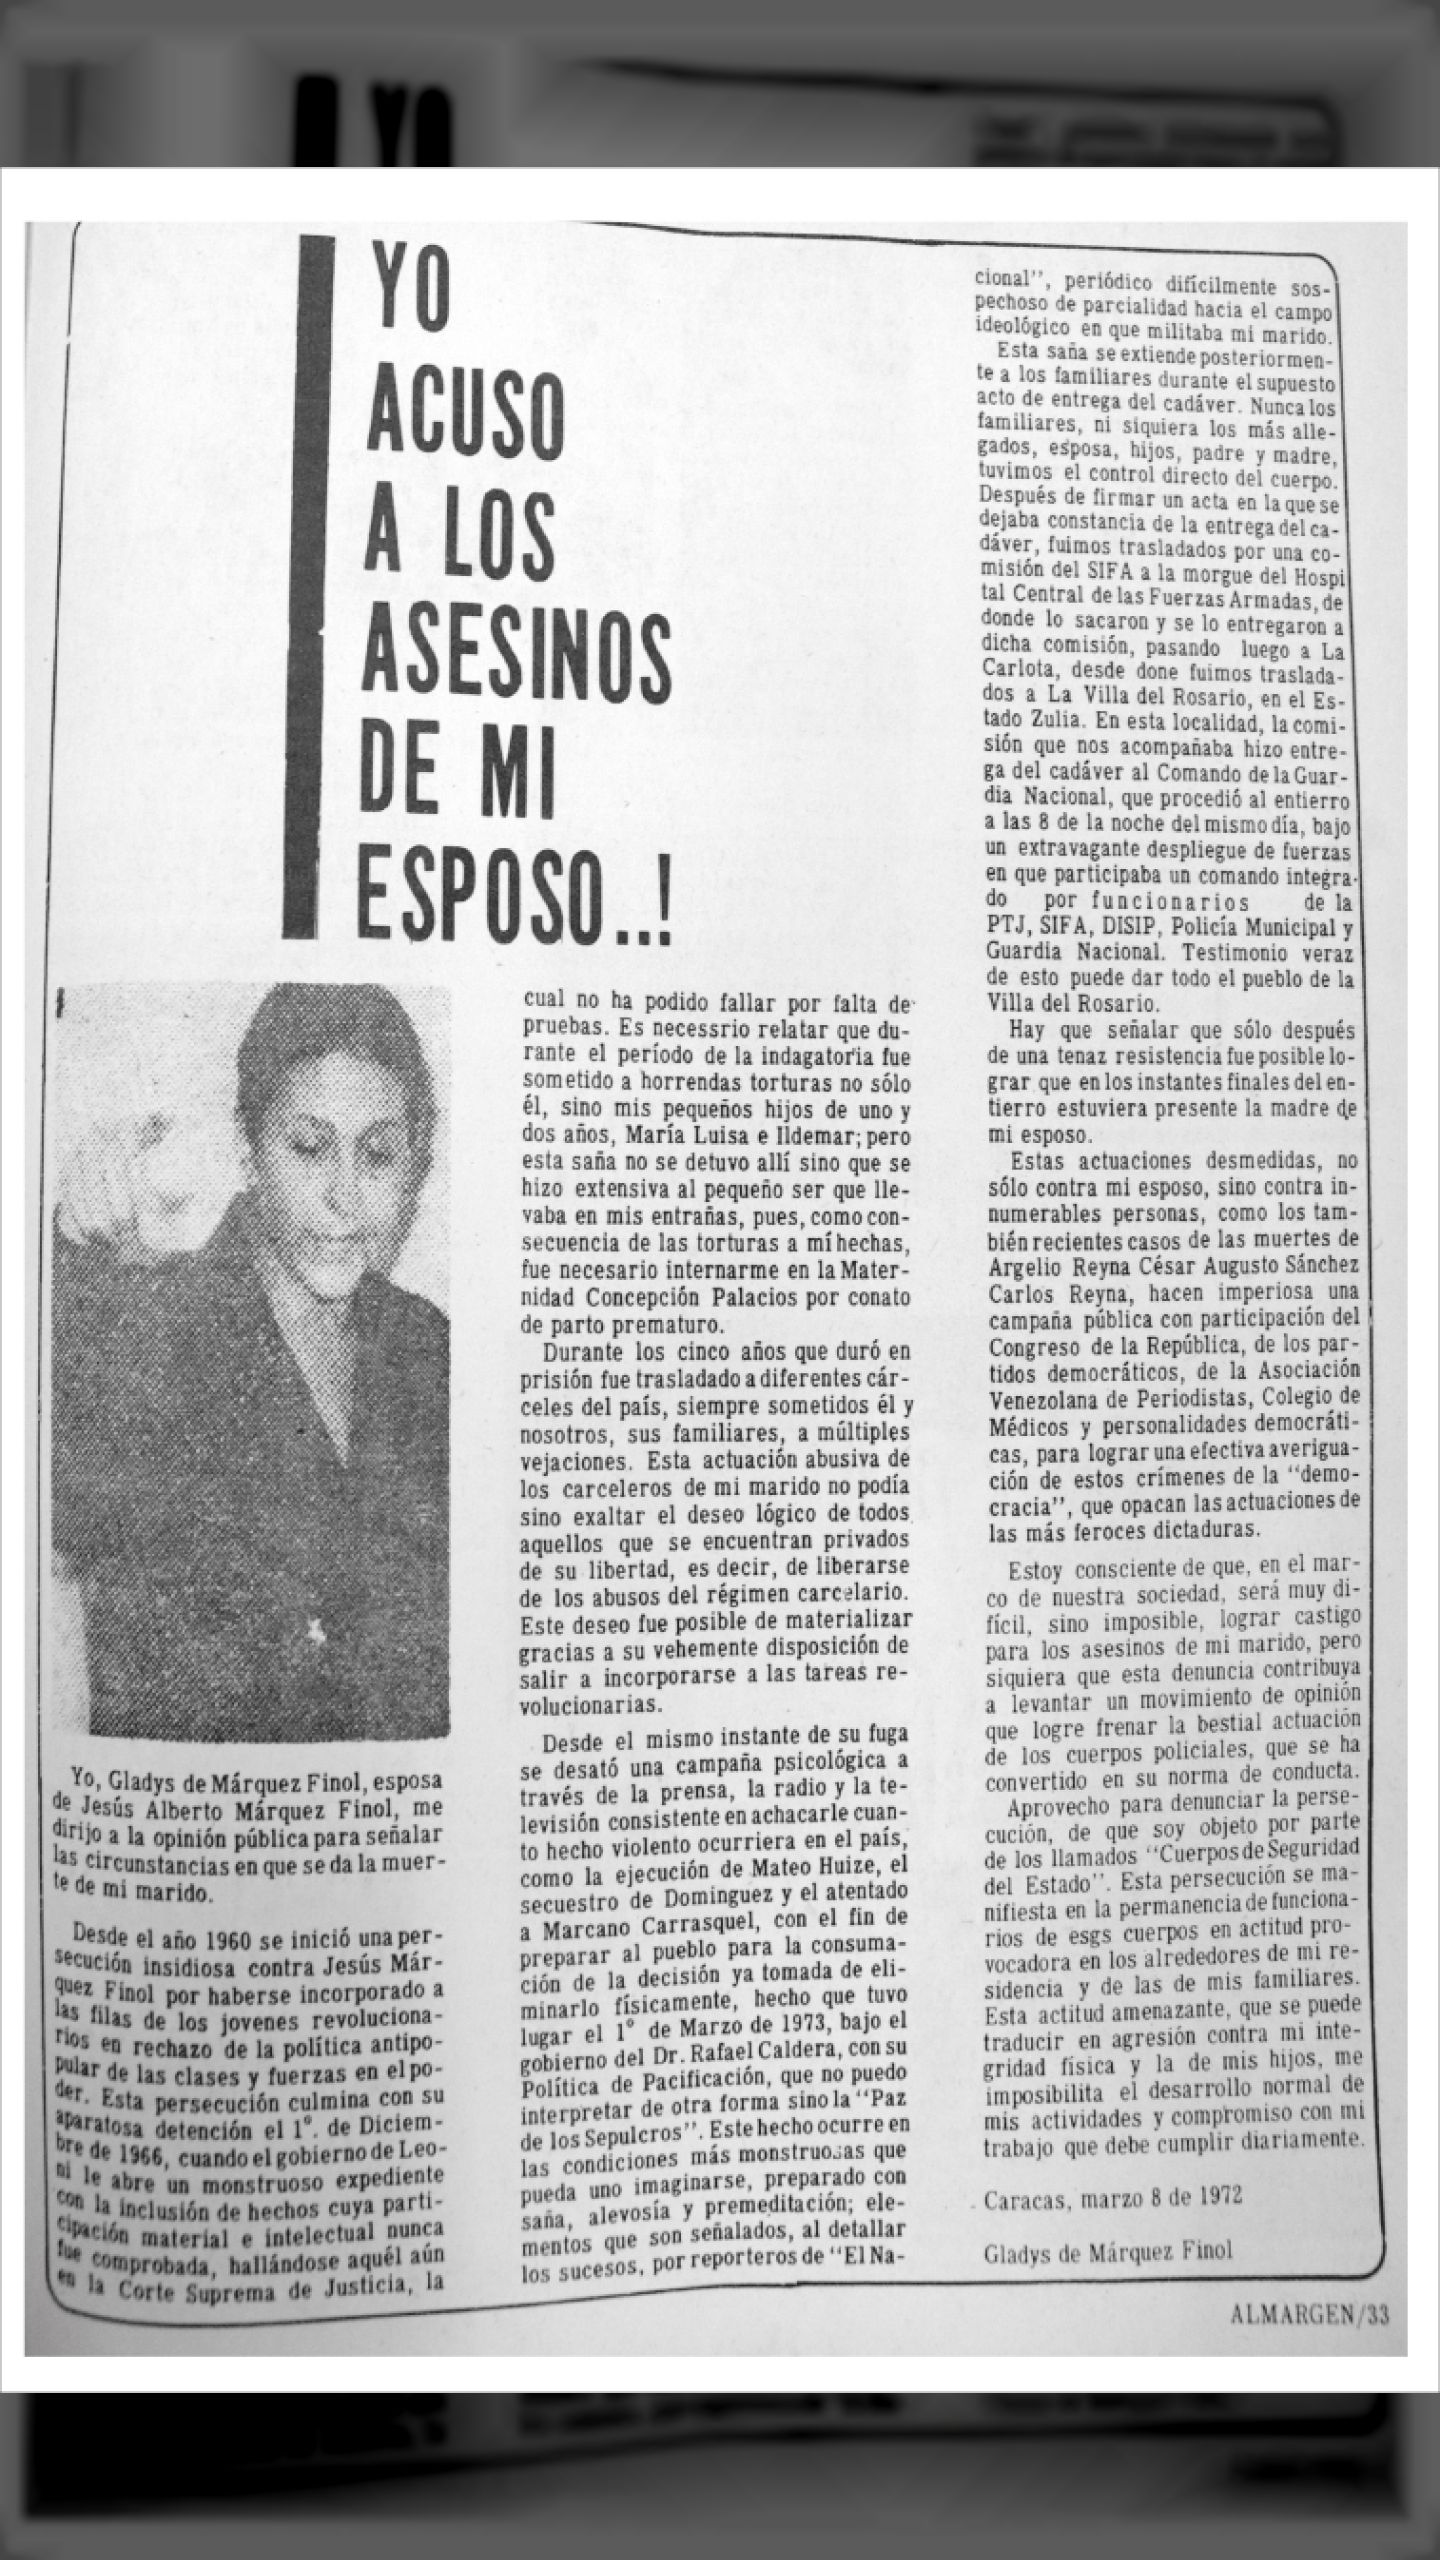 YO ACUSO A LOS ASESINOS DE MI ESPOSO (Revista Almargen, marzo de 1973)